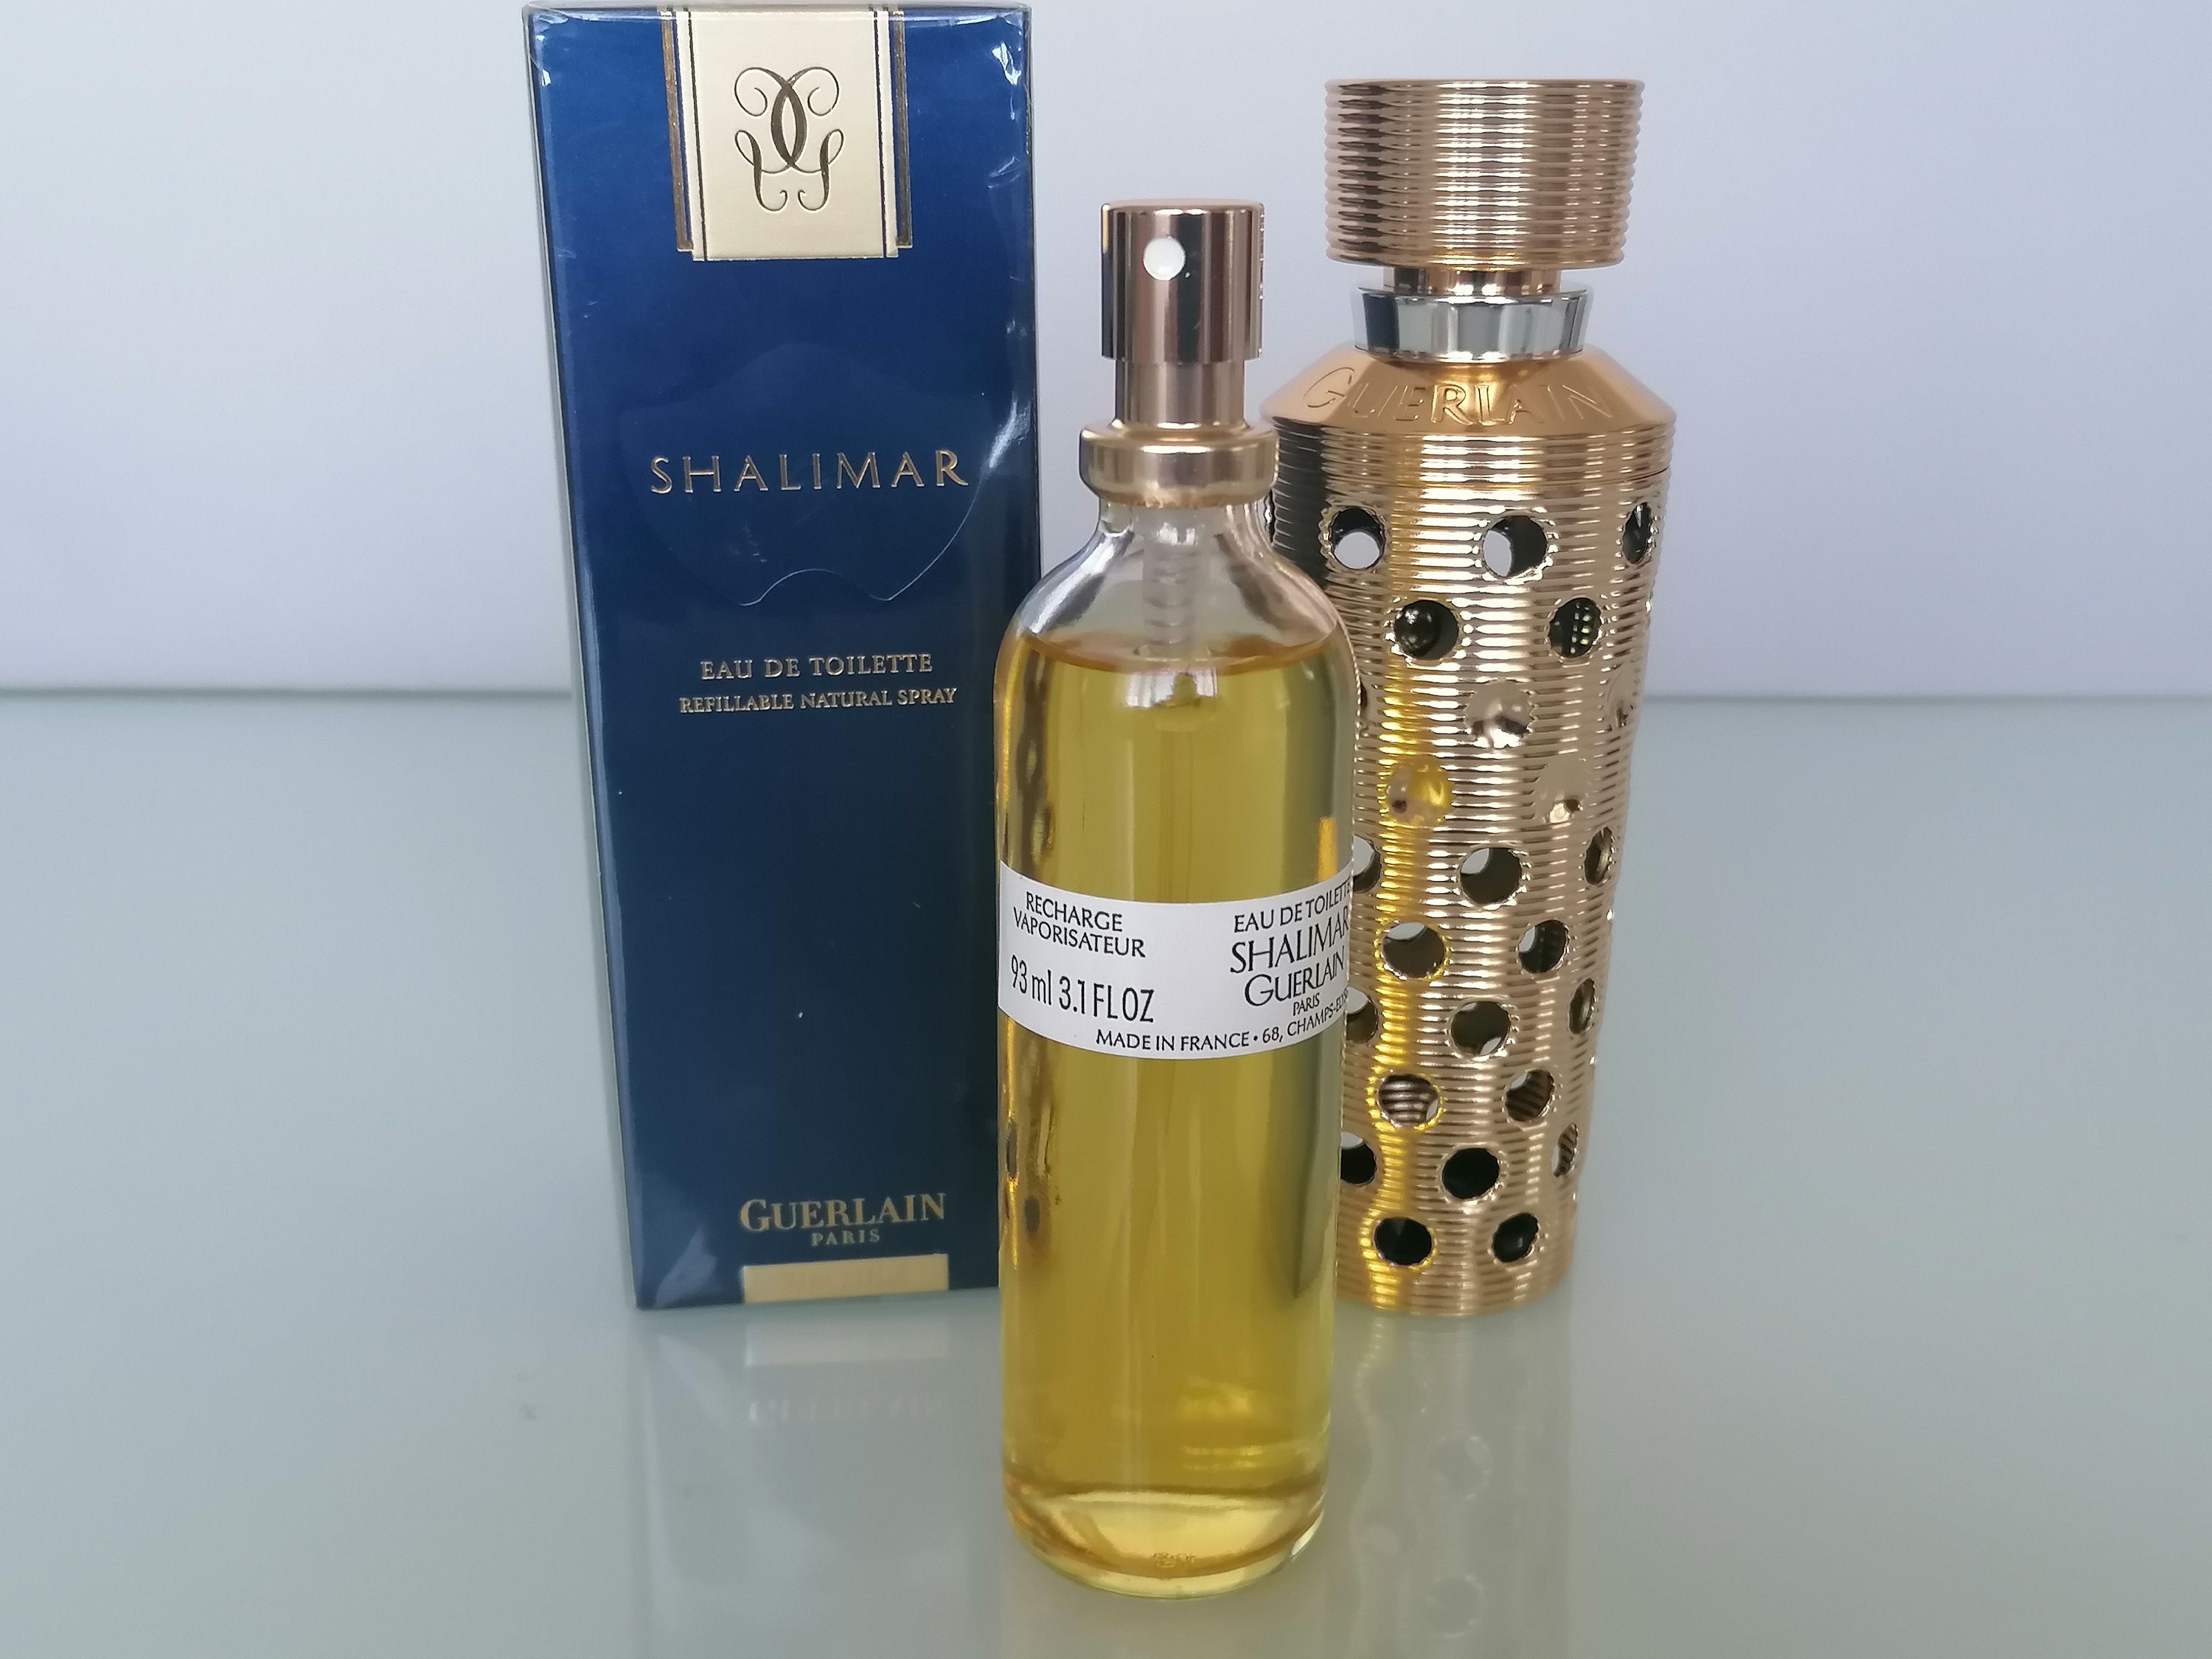 SHALIMAR - Eau de Parfum Vaporisateur Rechargeable - Guerlain